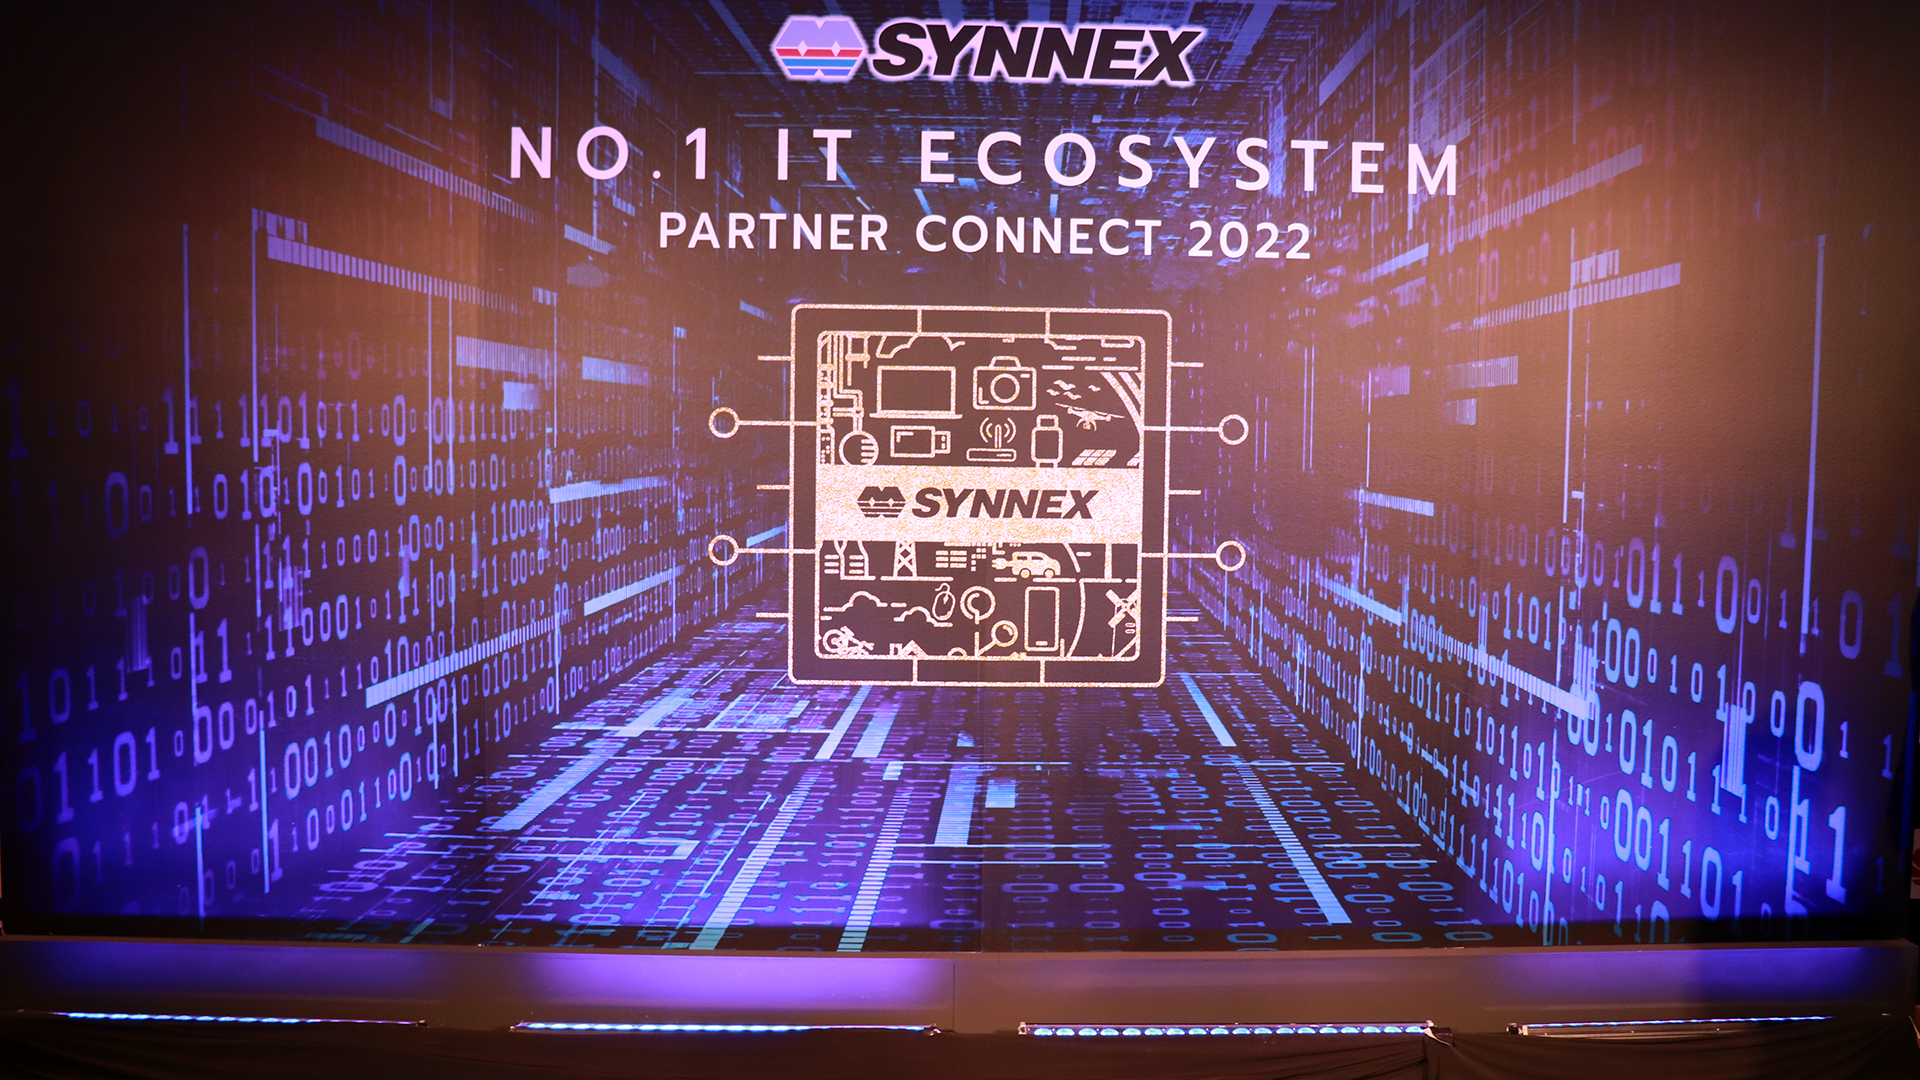 ซินเน็คฯ จัด Synnex Partner Connect 2022 ชูจุดเด่น No.1 IT Ecosystem รุกตลาดดิจิทัลทุกระดับ￼